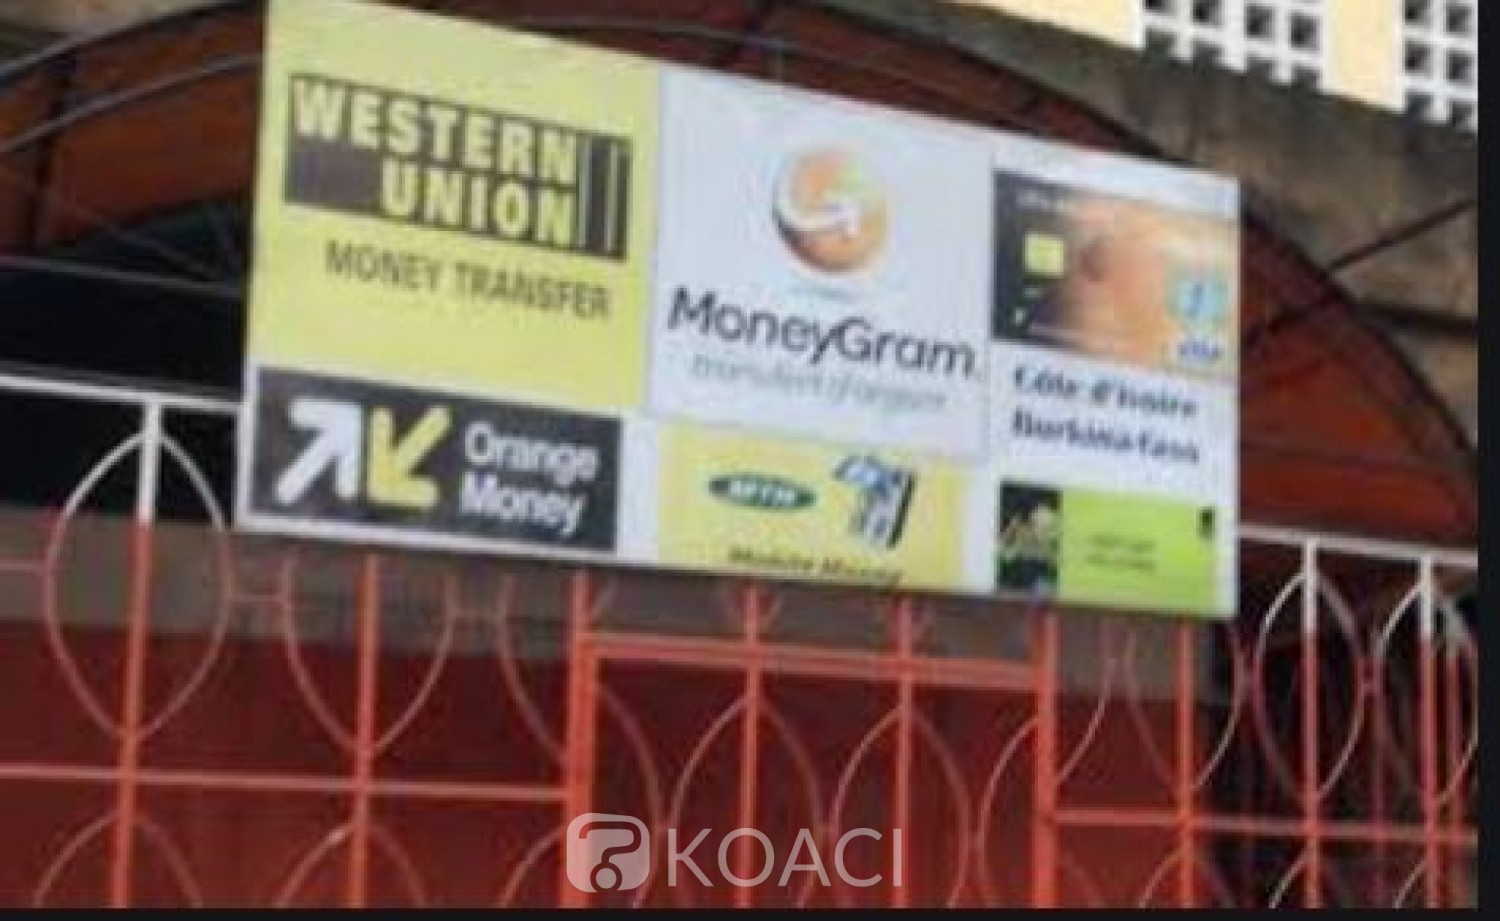 Côte d'Ivoire : Avec une arme factice, un étudiant  braque un point de transfert de mobile money et se fait appréhender